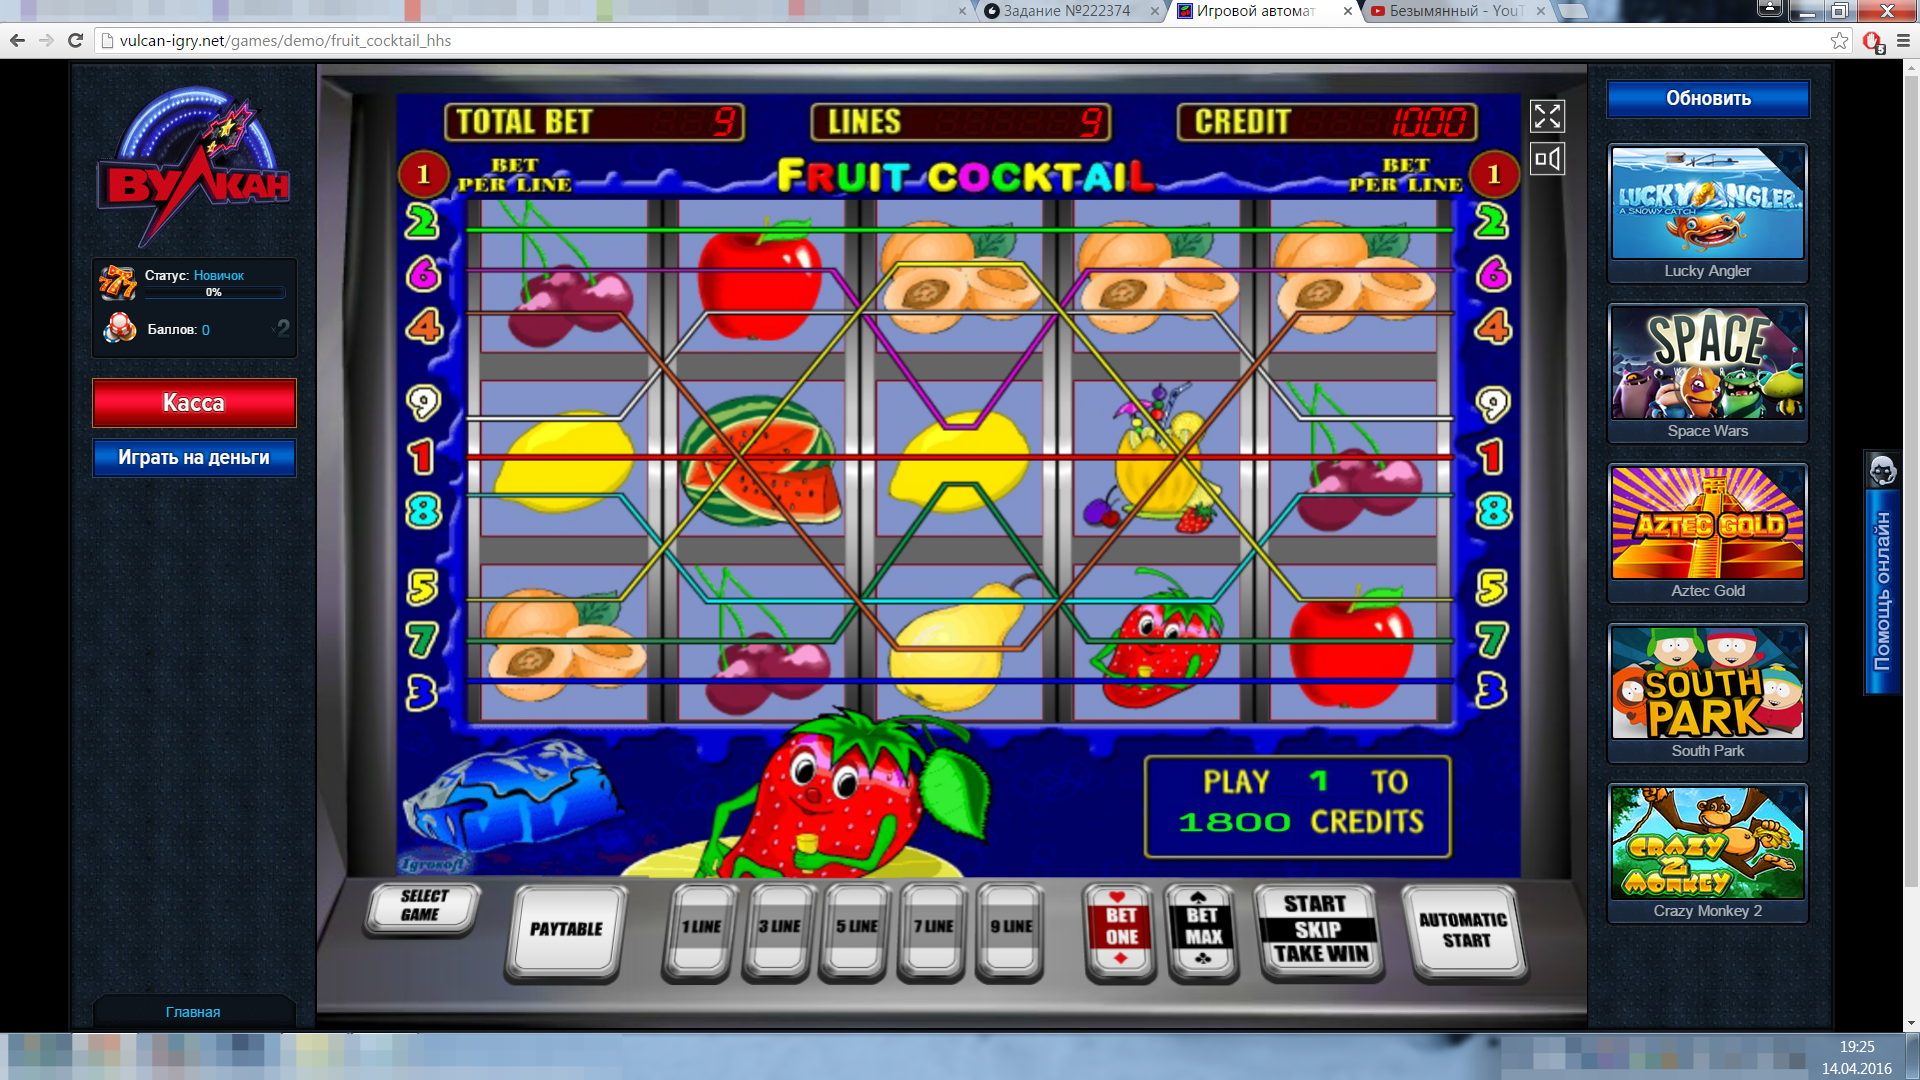 Скачать бесплатно игру игровые автоматы резидент игровые автоматы на реальные деньги с хорошей отдачей